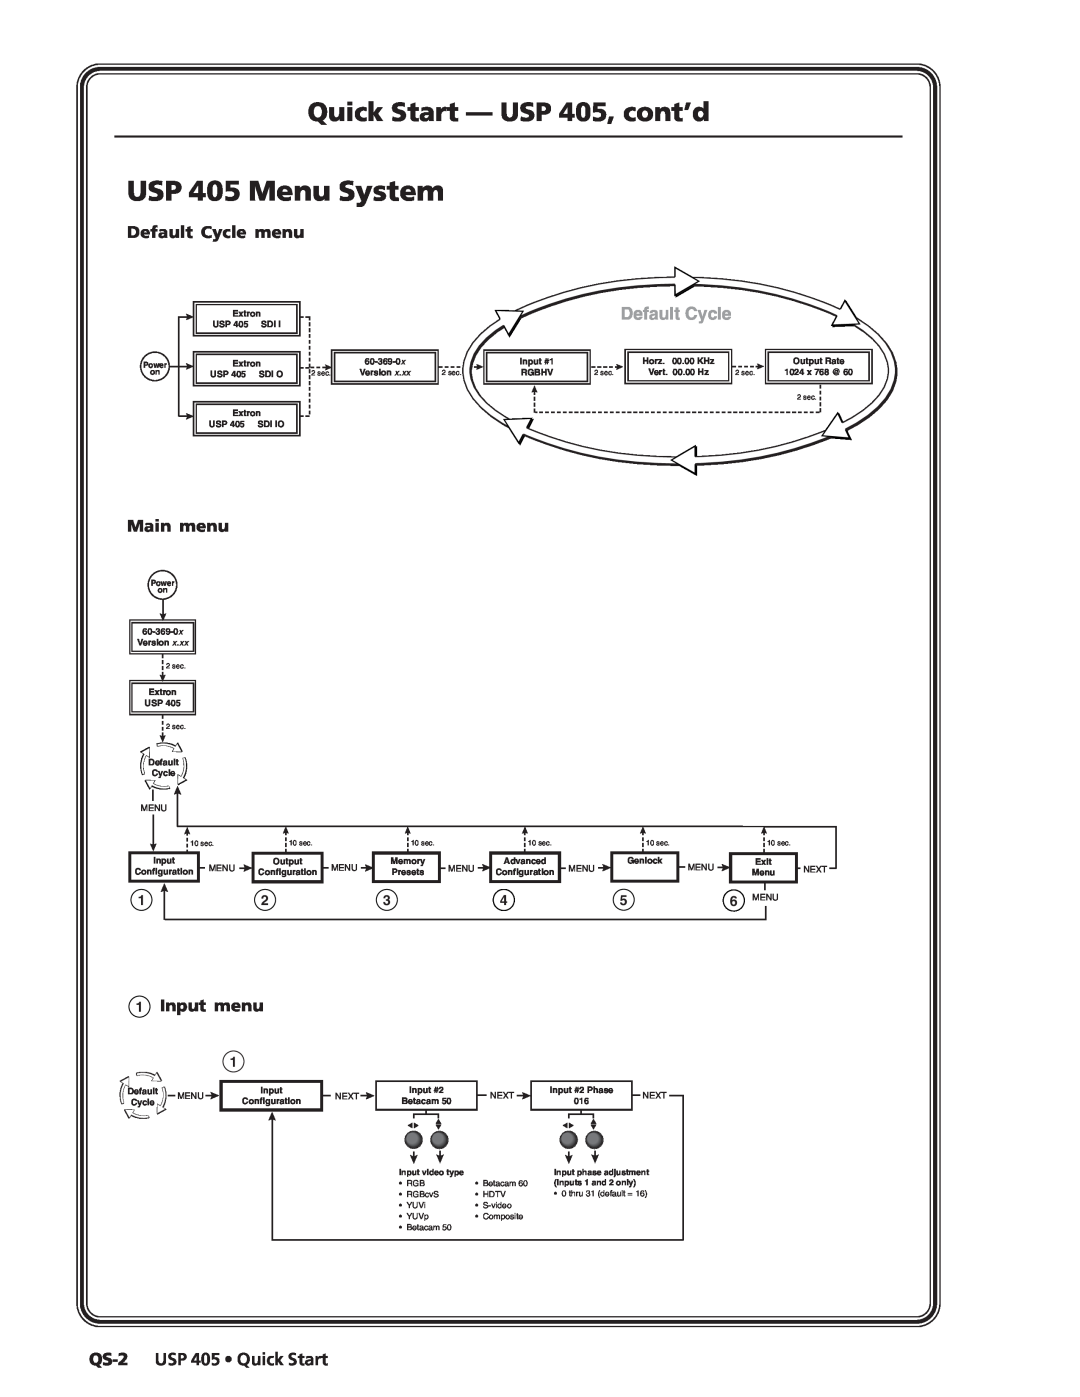 Extron electronic USP 405 Menu System, Quick Start - USP 405, cont’d, Default Cycle menu, Main menu, 1Input menu, 6MENU 